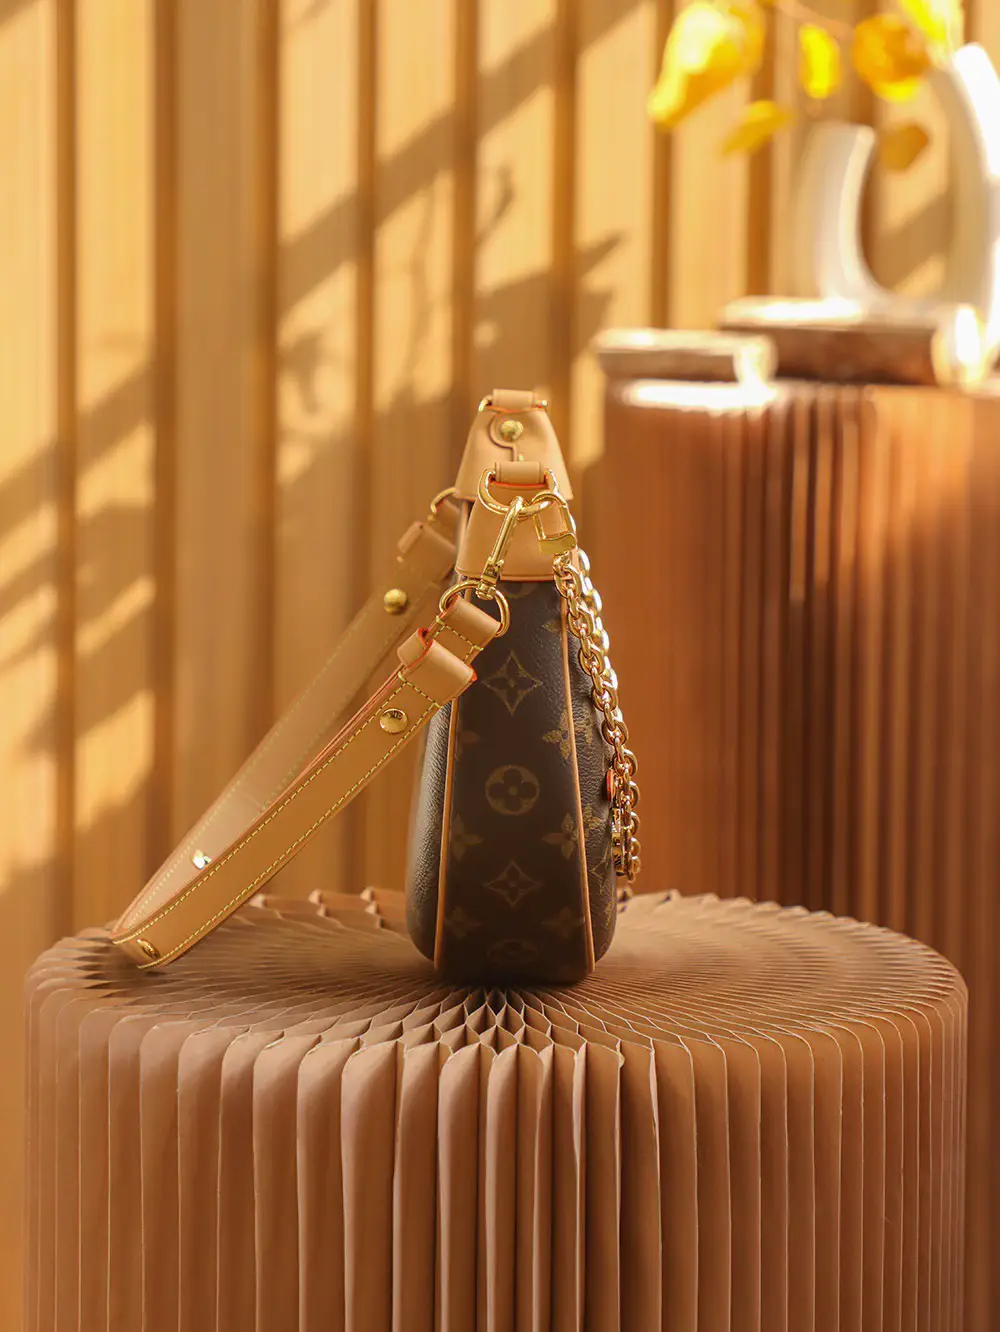 Louis Vuitton Loop Hobo Bag, Gallery posted by DuDu Bags